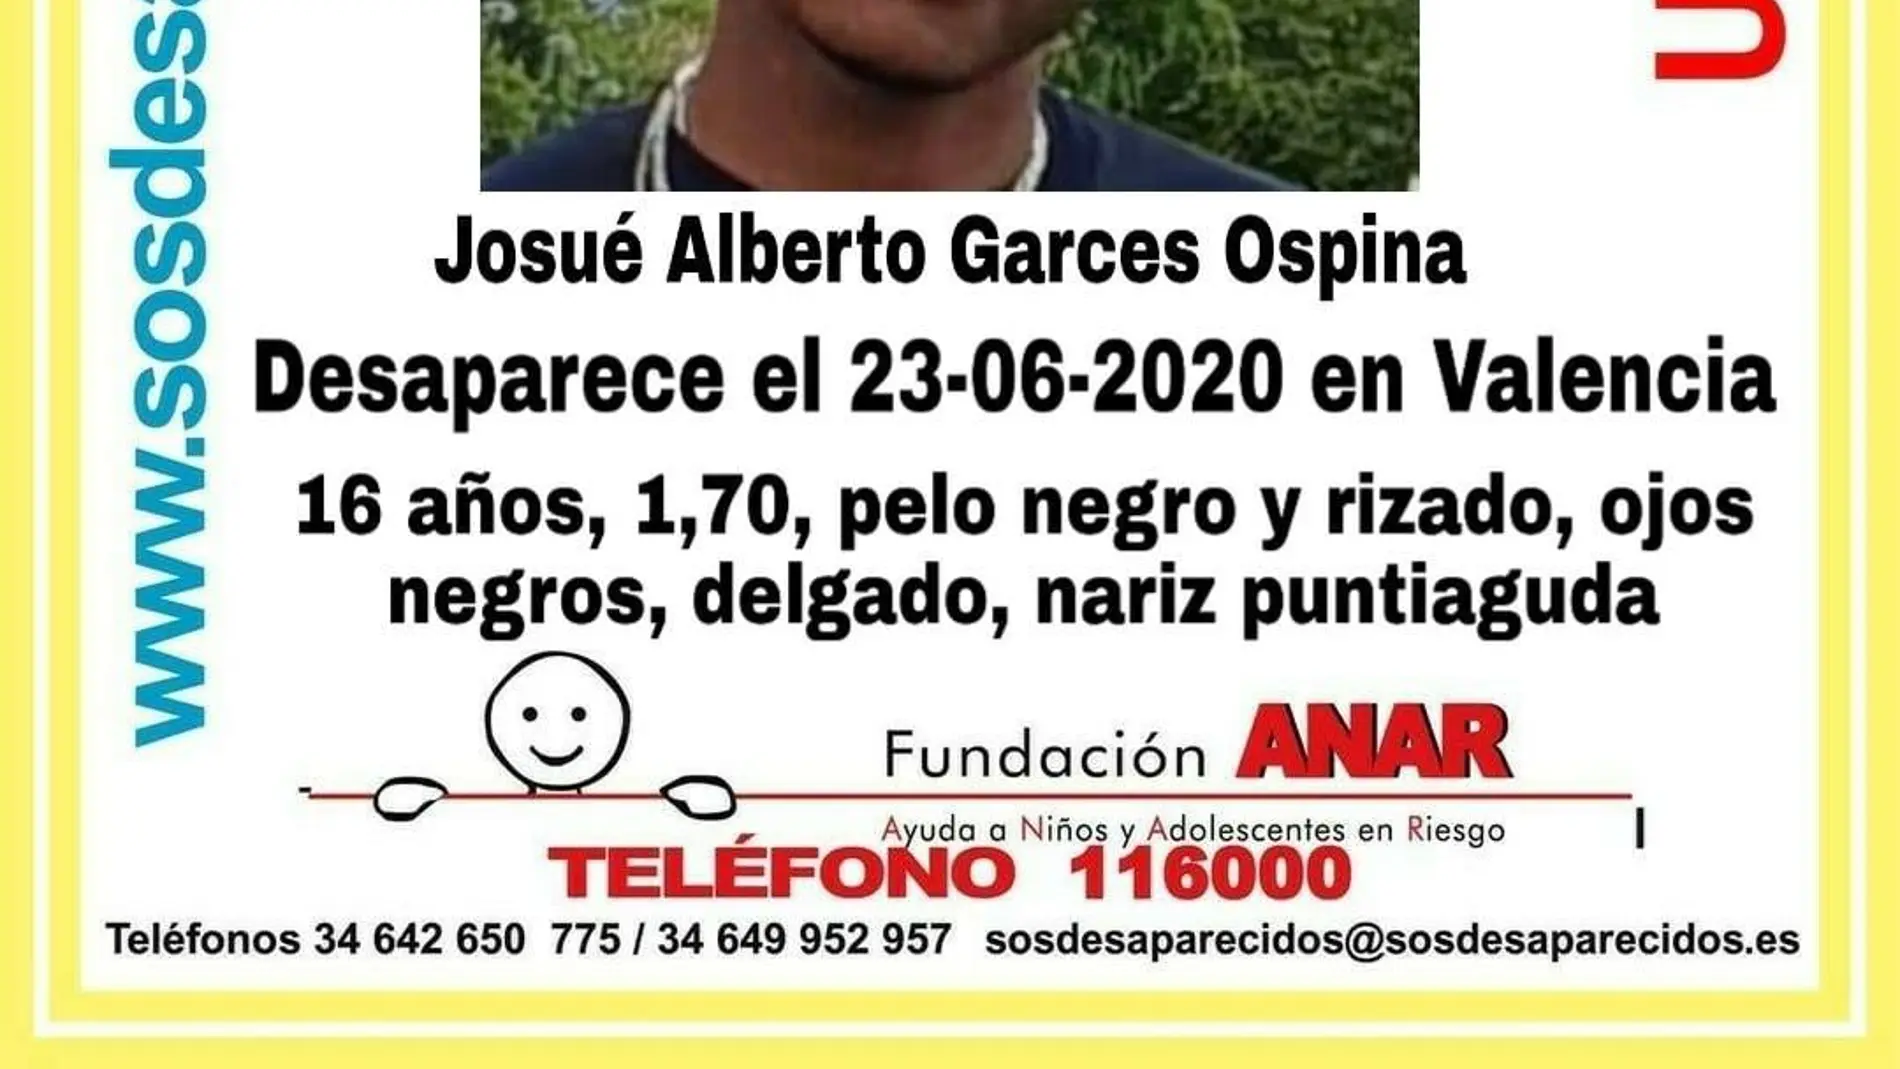 Sos Desaparecidos ha denunciado la desaparición de un menor en Valencia. Falta desde el día 23 de junio.